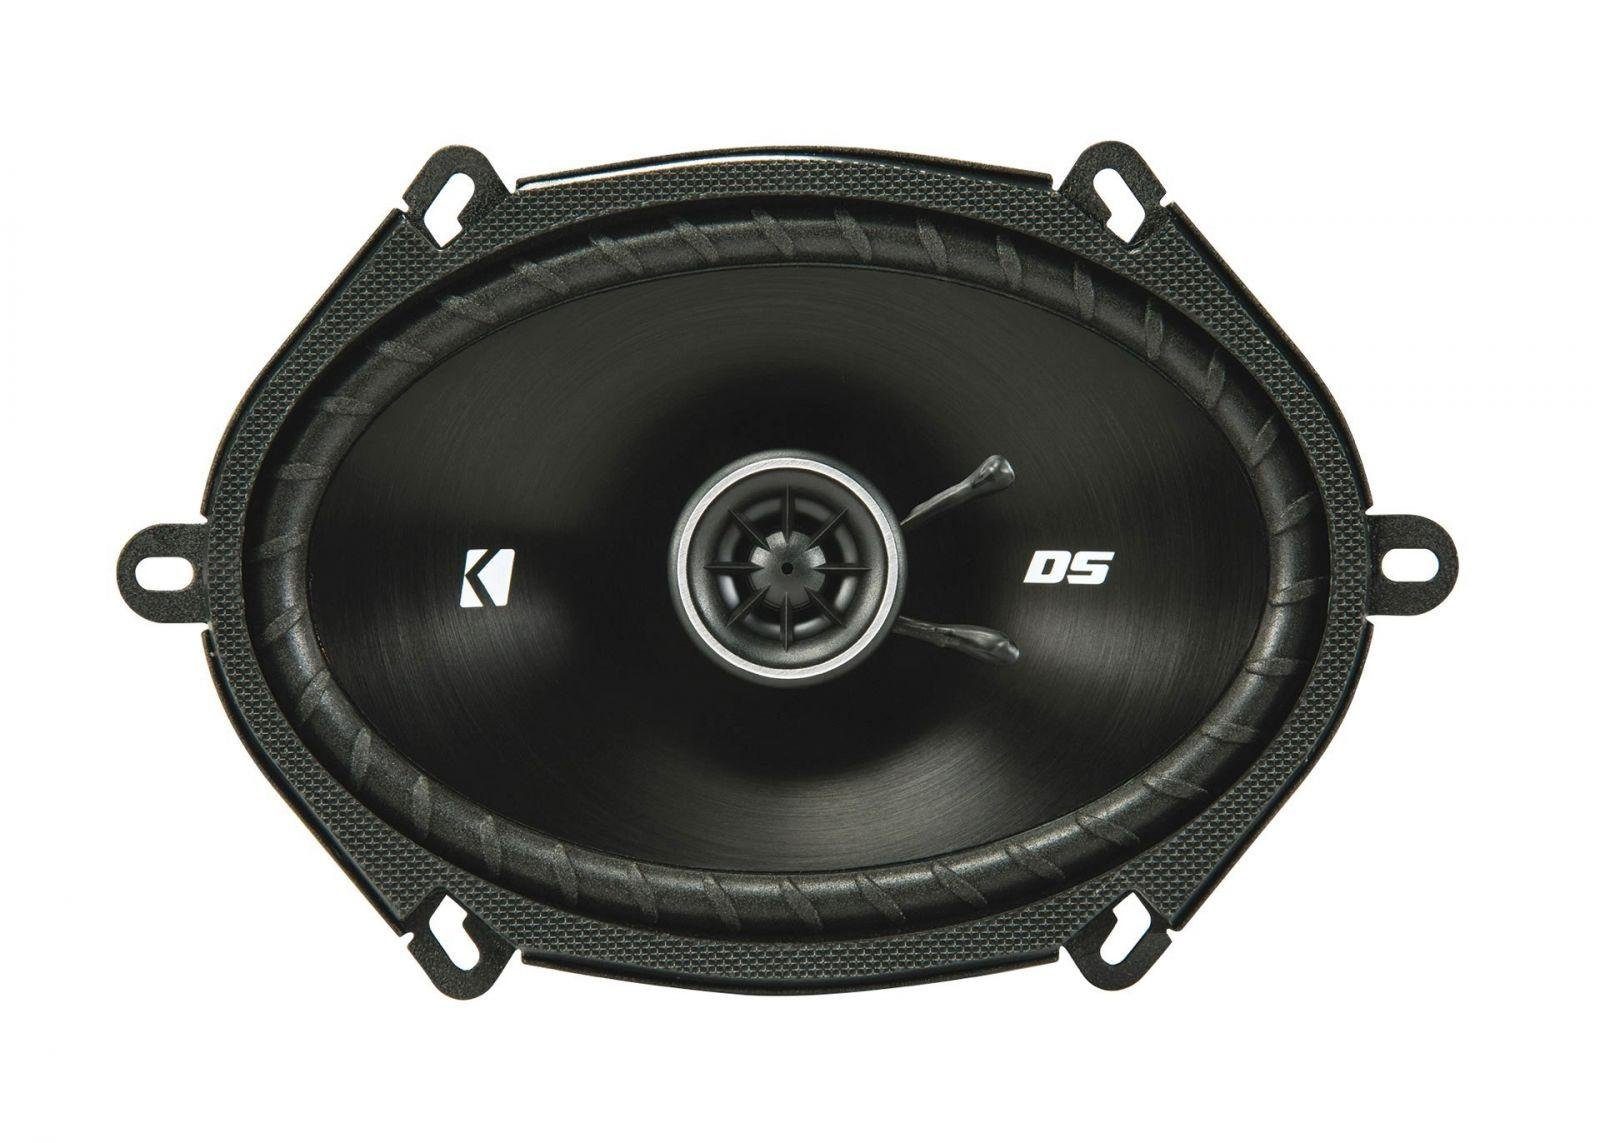 Kicker DSC6804 16 x 20 2-Wege cm Koaxial 200 (6 Auto-Lautsprecher x Watt 8)